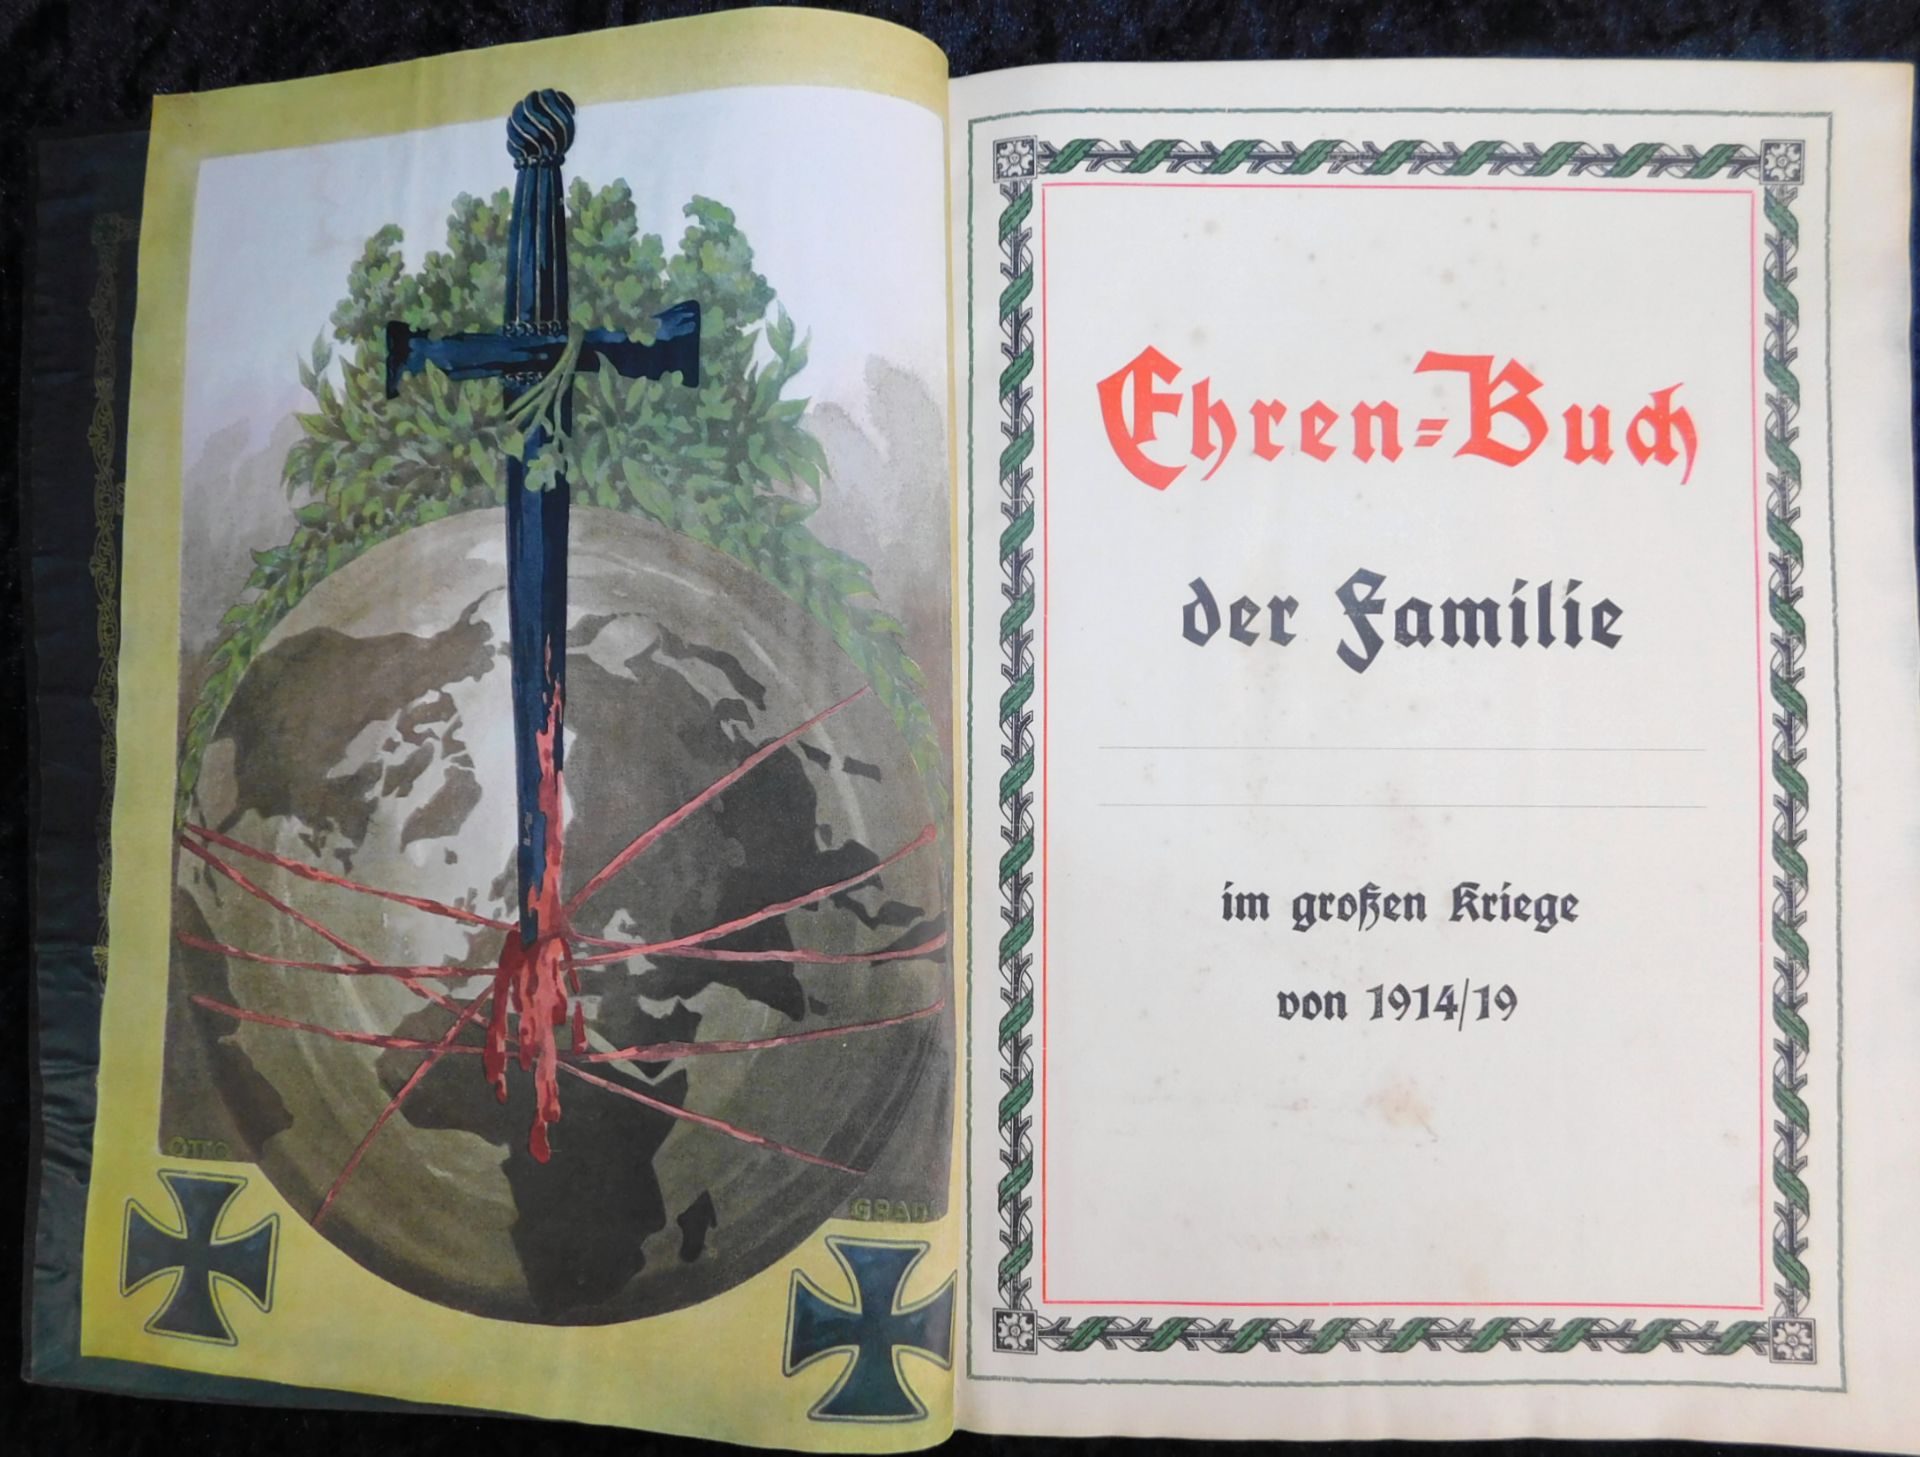 Großes Ehrenbuch 1914, Familienstammbuch, Verlag Joh.E.Hubens, Diessen/München - Bild 4 aus 7